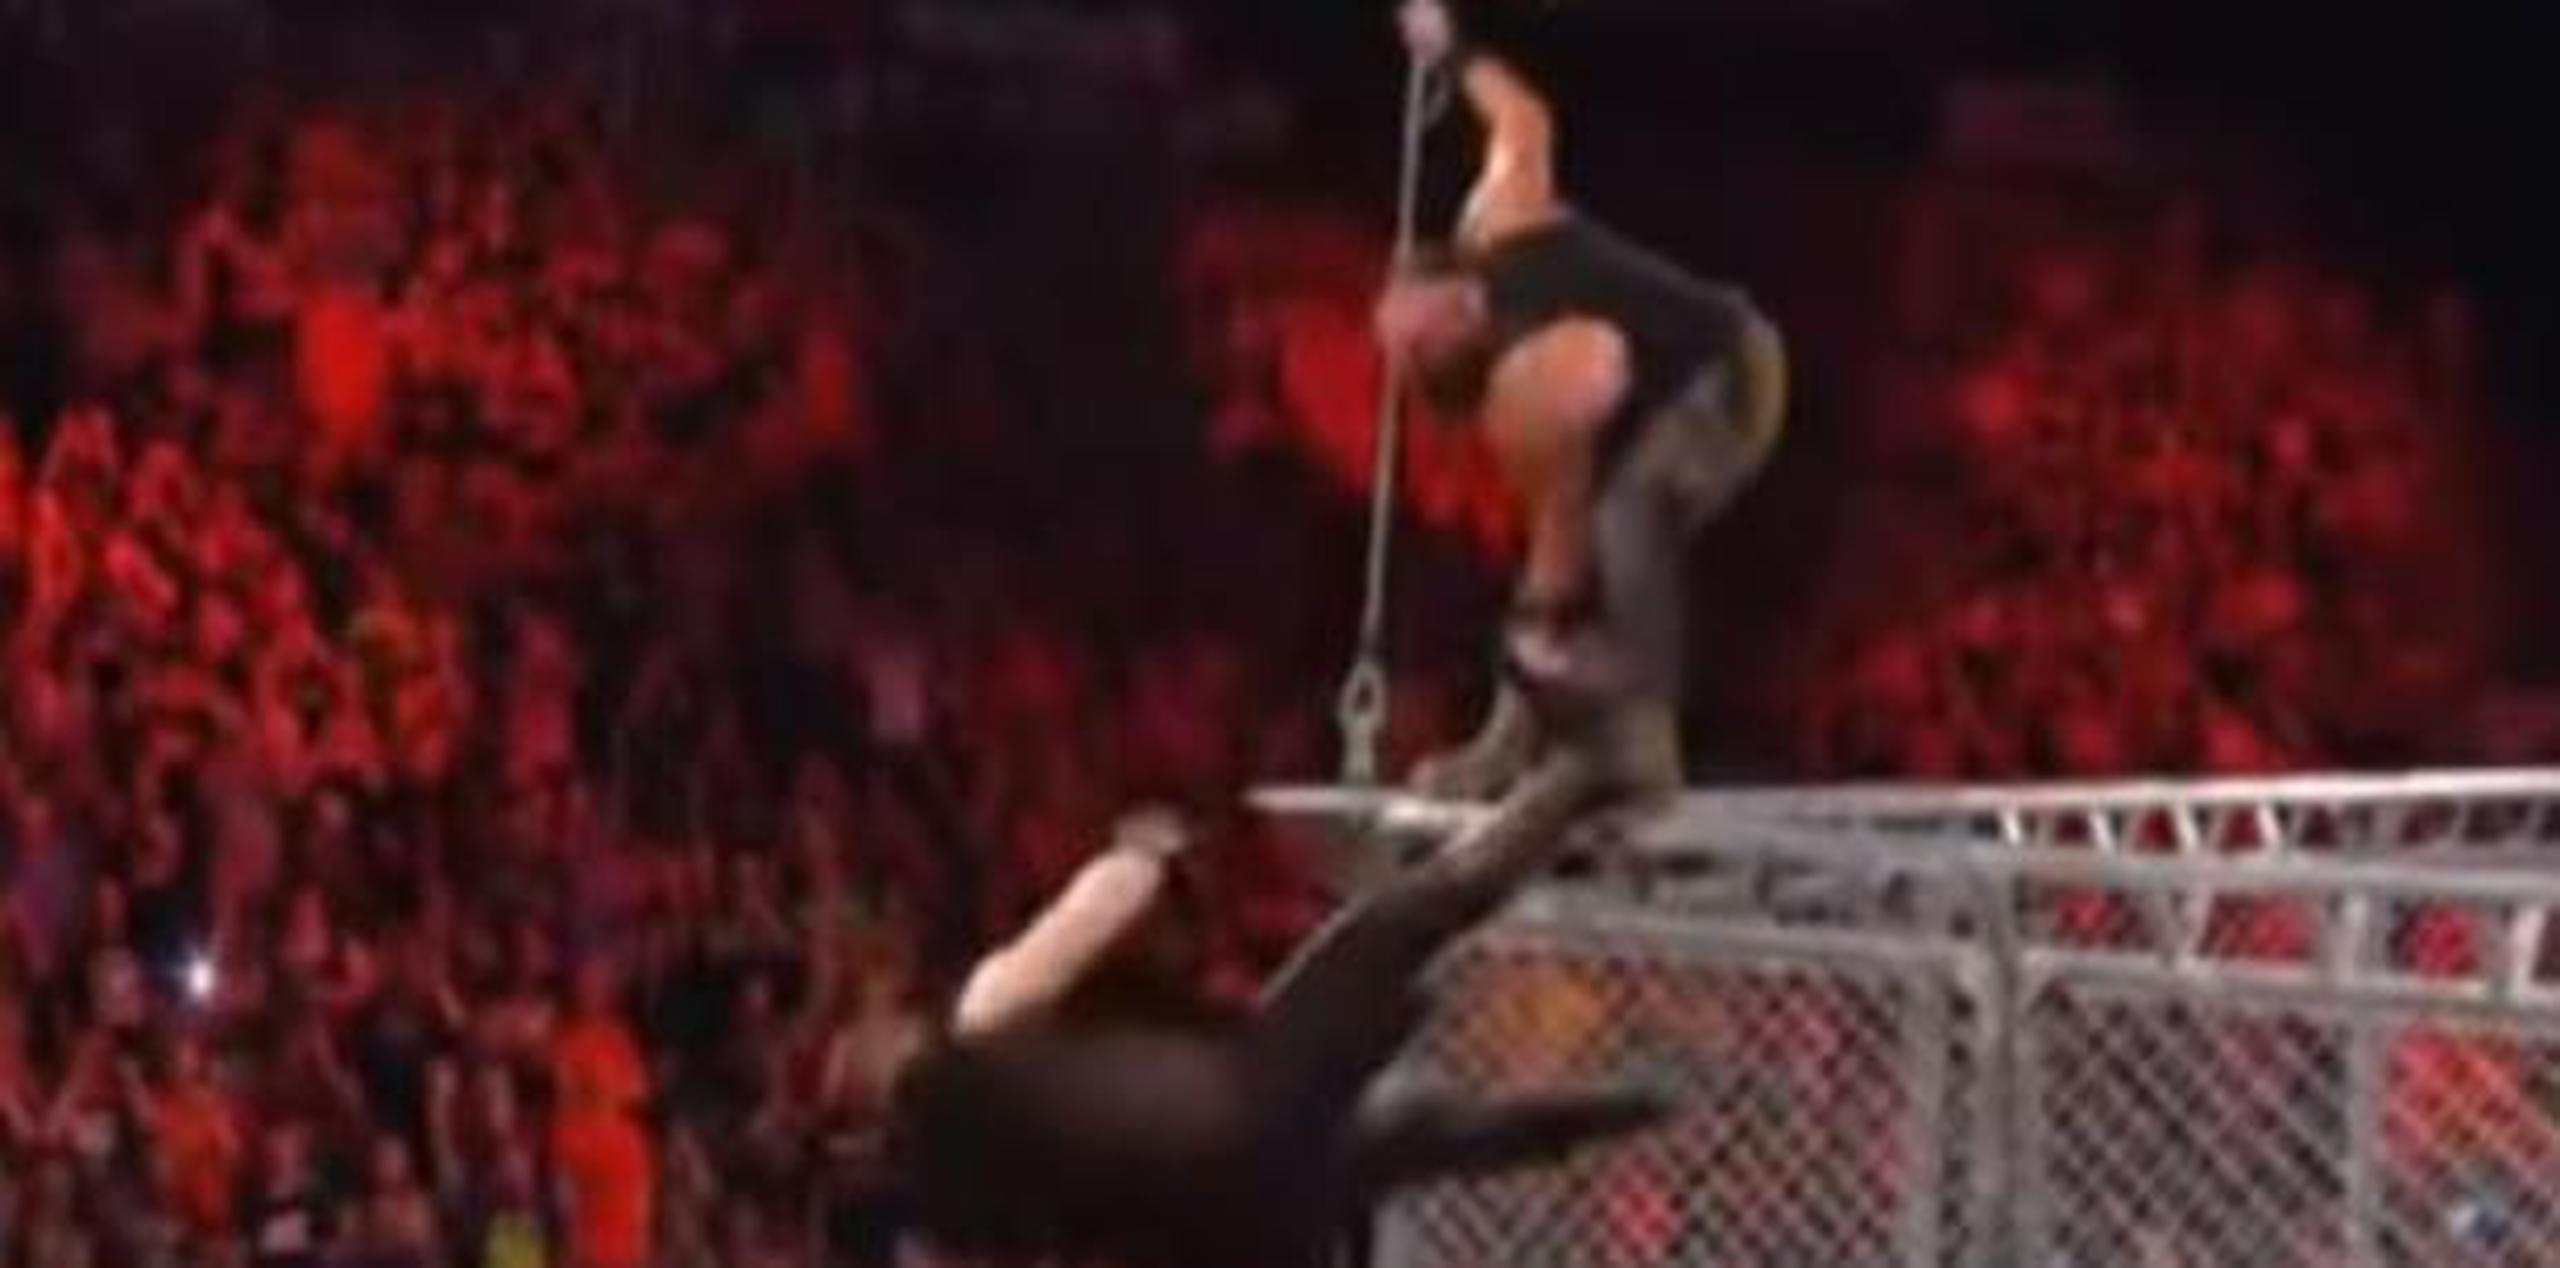 El lanzamiento fue luego que Owens ganara el combate. (captura: Youtube)